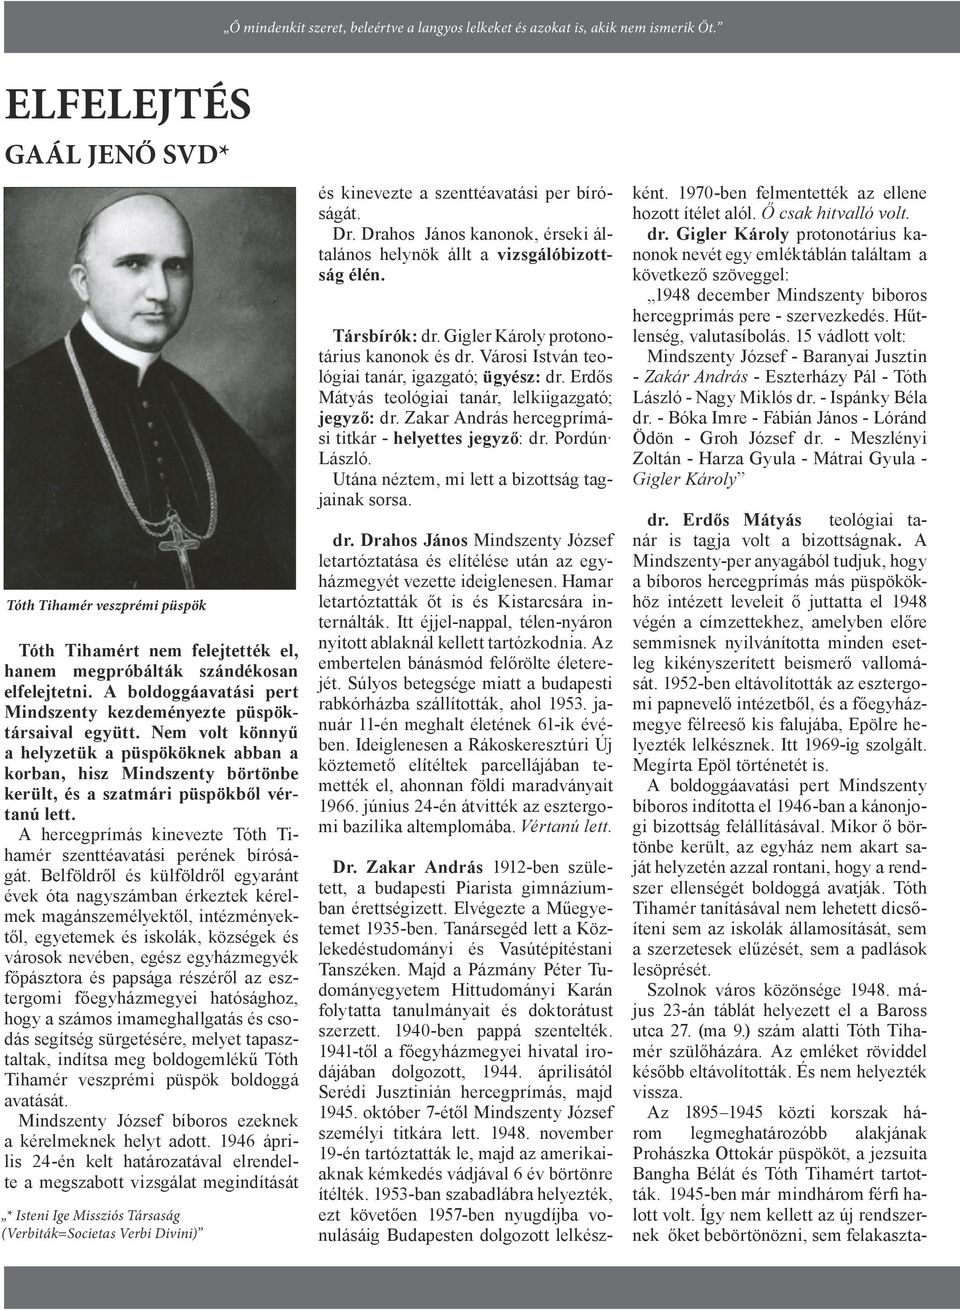 A boldoggáavatási pert Mindszenty kezdeményezte püspöktársaival együtt. Nem volt könnyű a helyzetük a püspököknek abban a korban, hisz Mindszenty börtönbe került, és a szatmári püspökből vértanú lett.